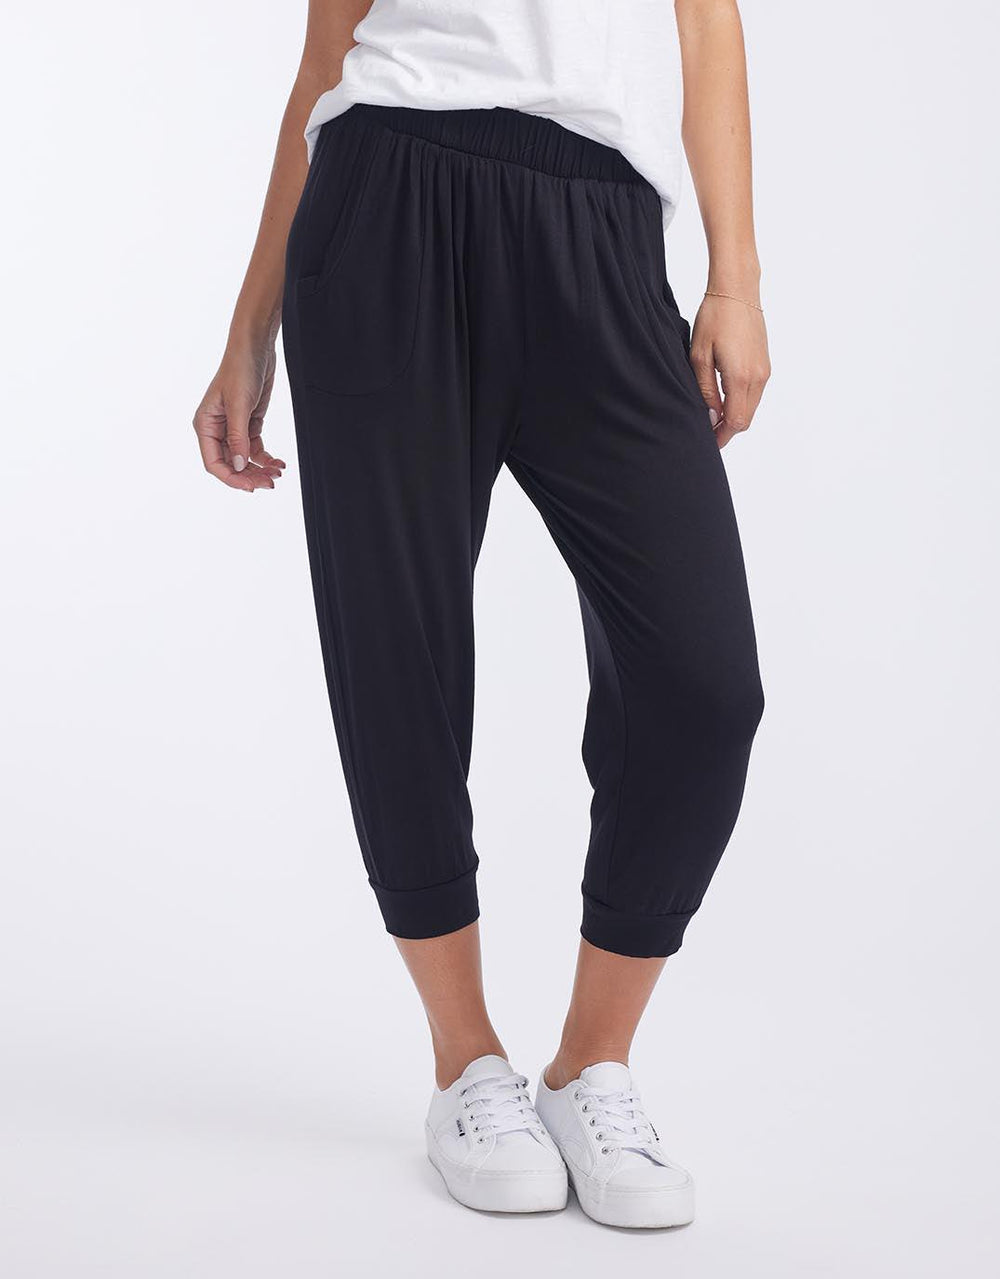 Buy Tokyo 3/4 Pants - Black Betty Basics for Sale Online Australia